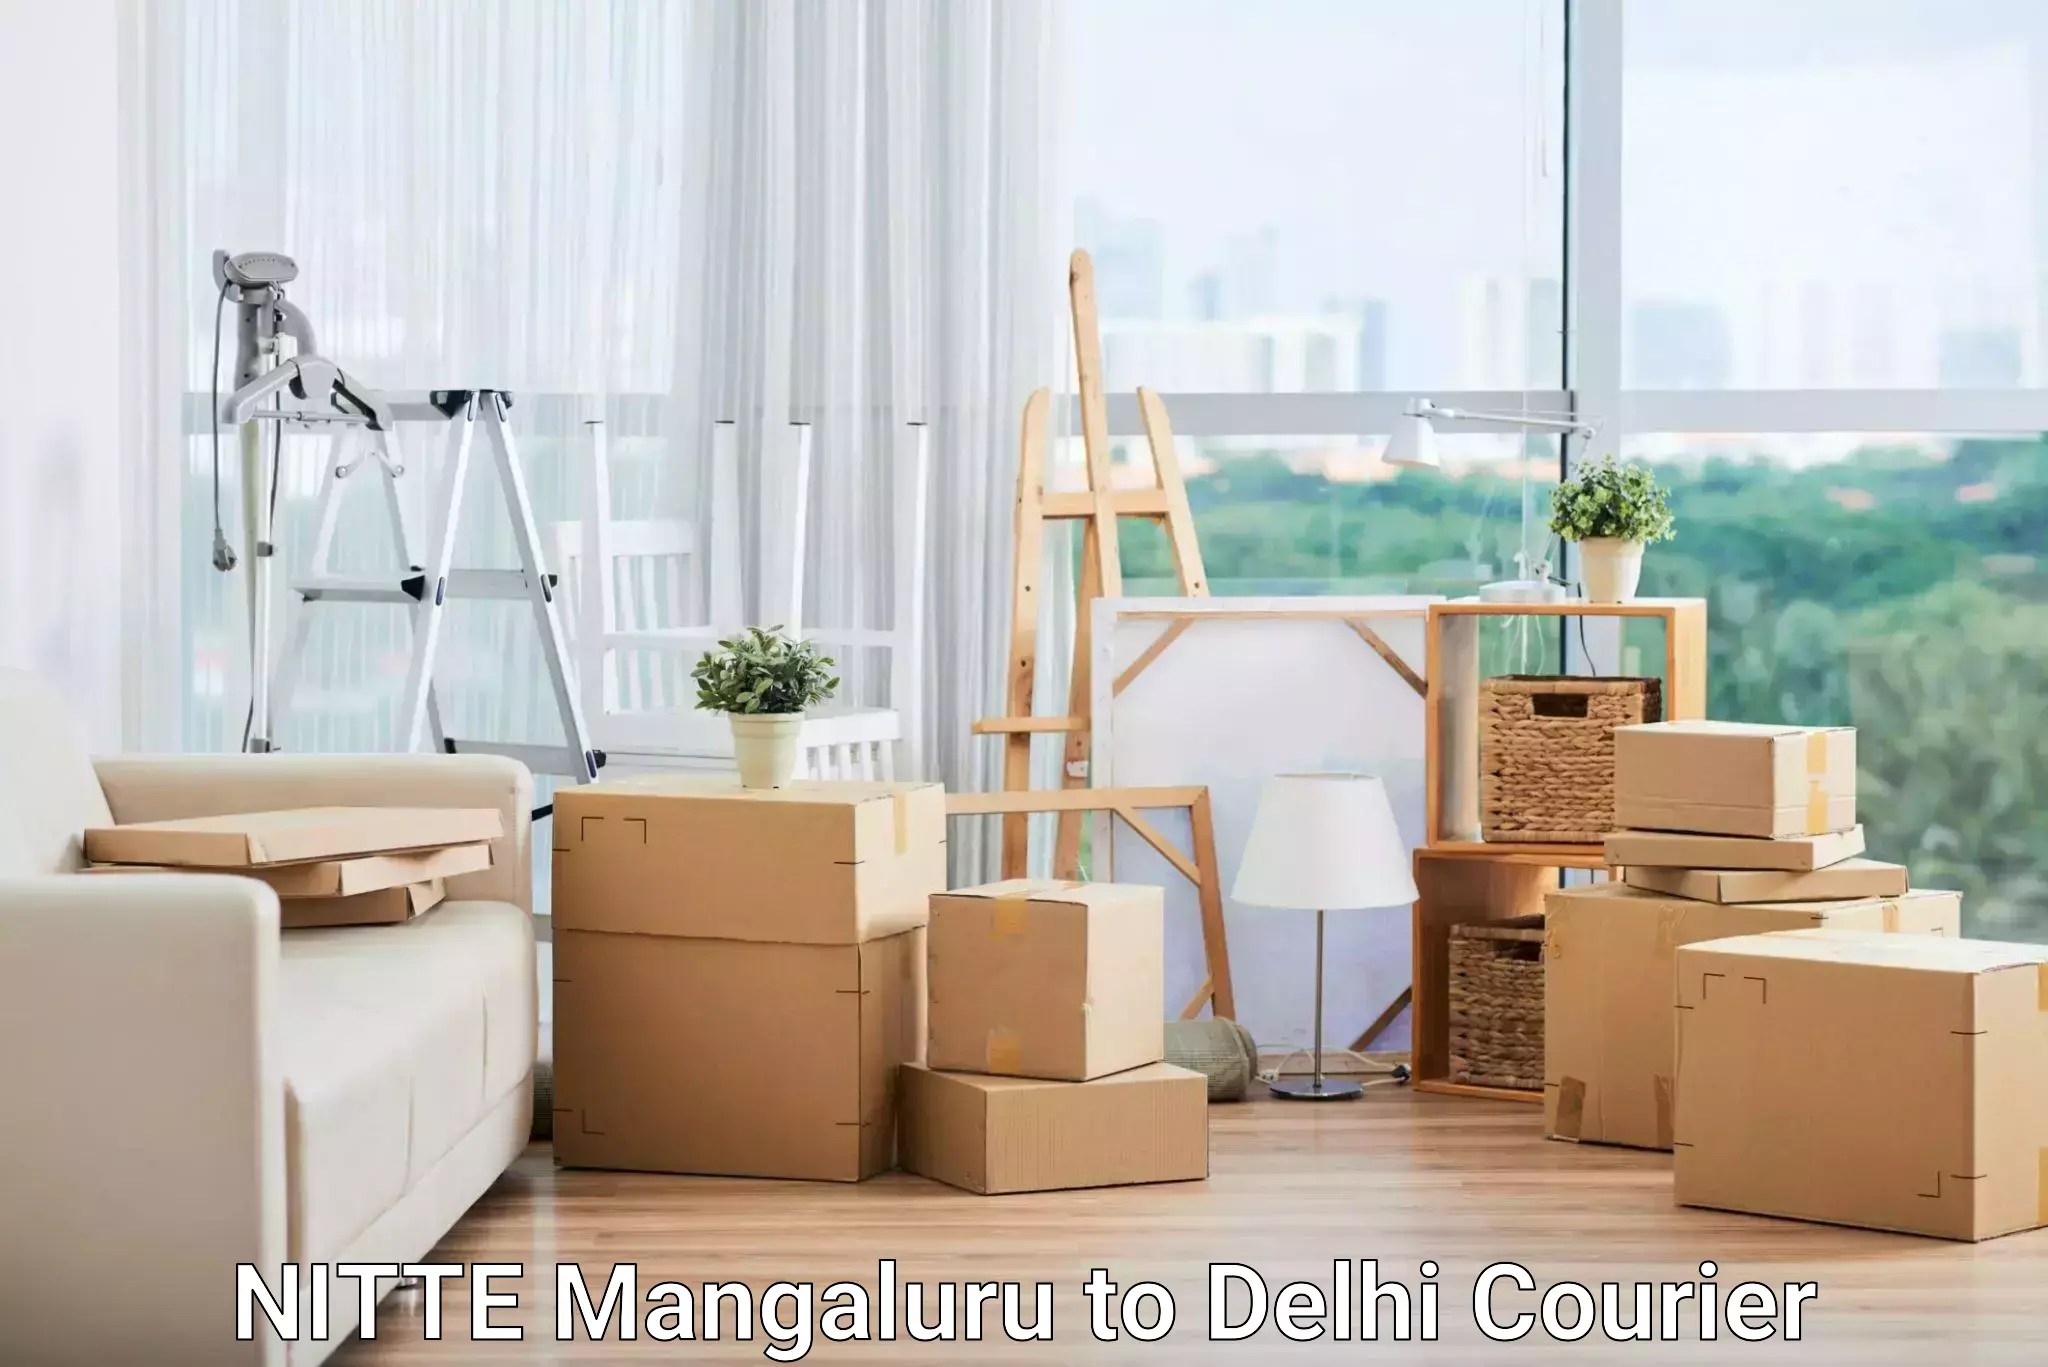 User-friendly courier app NITTE Mangaluru to Delhi